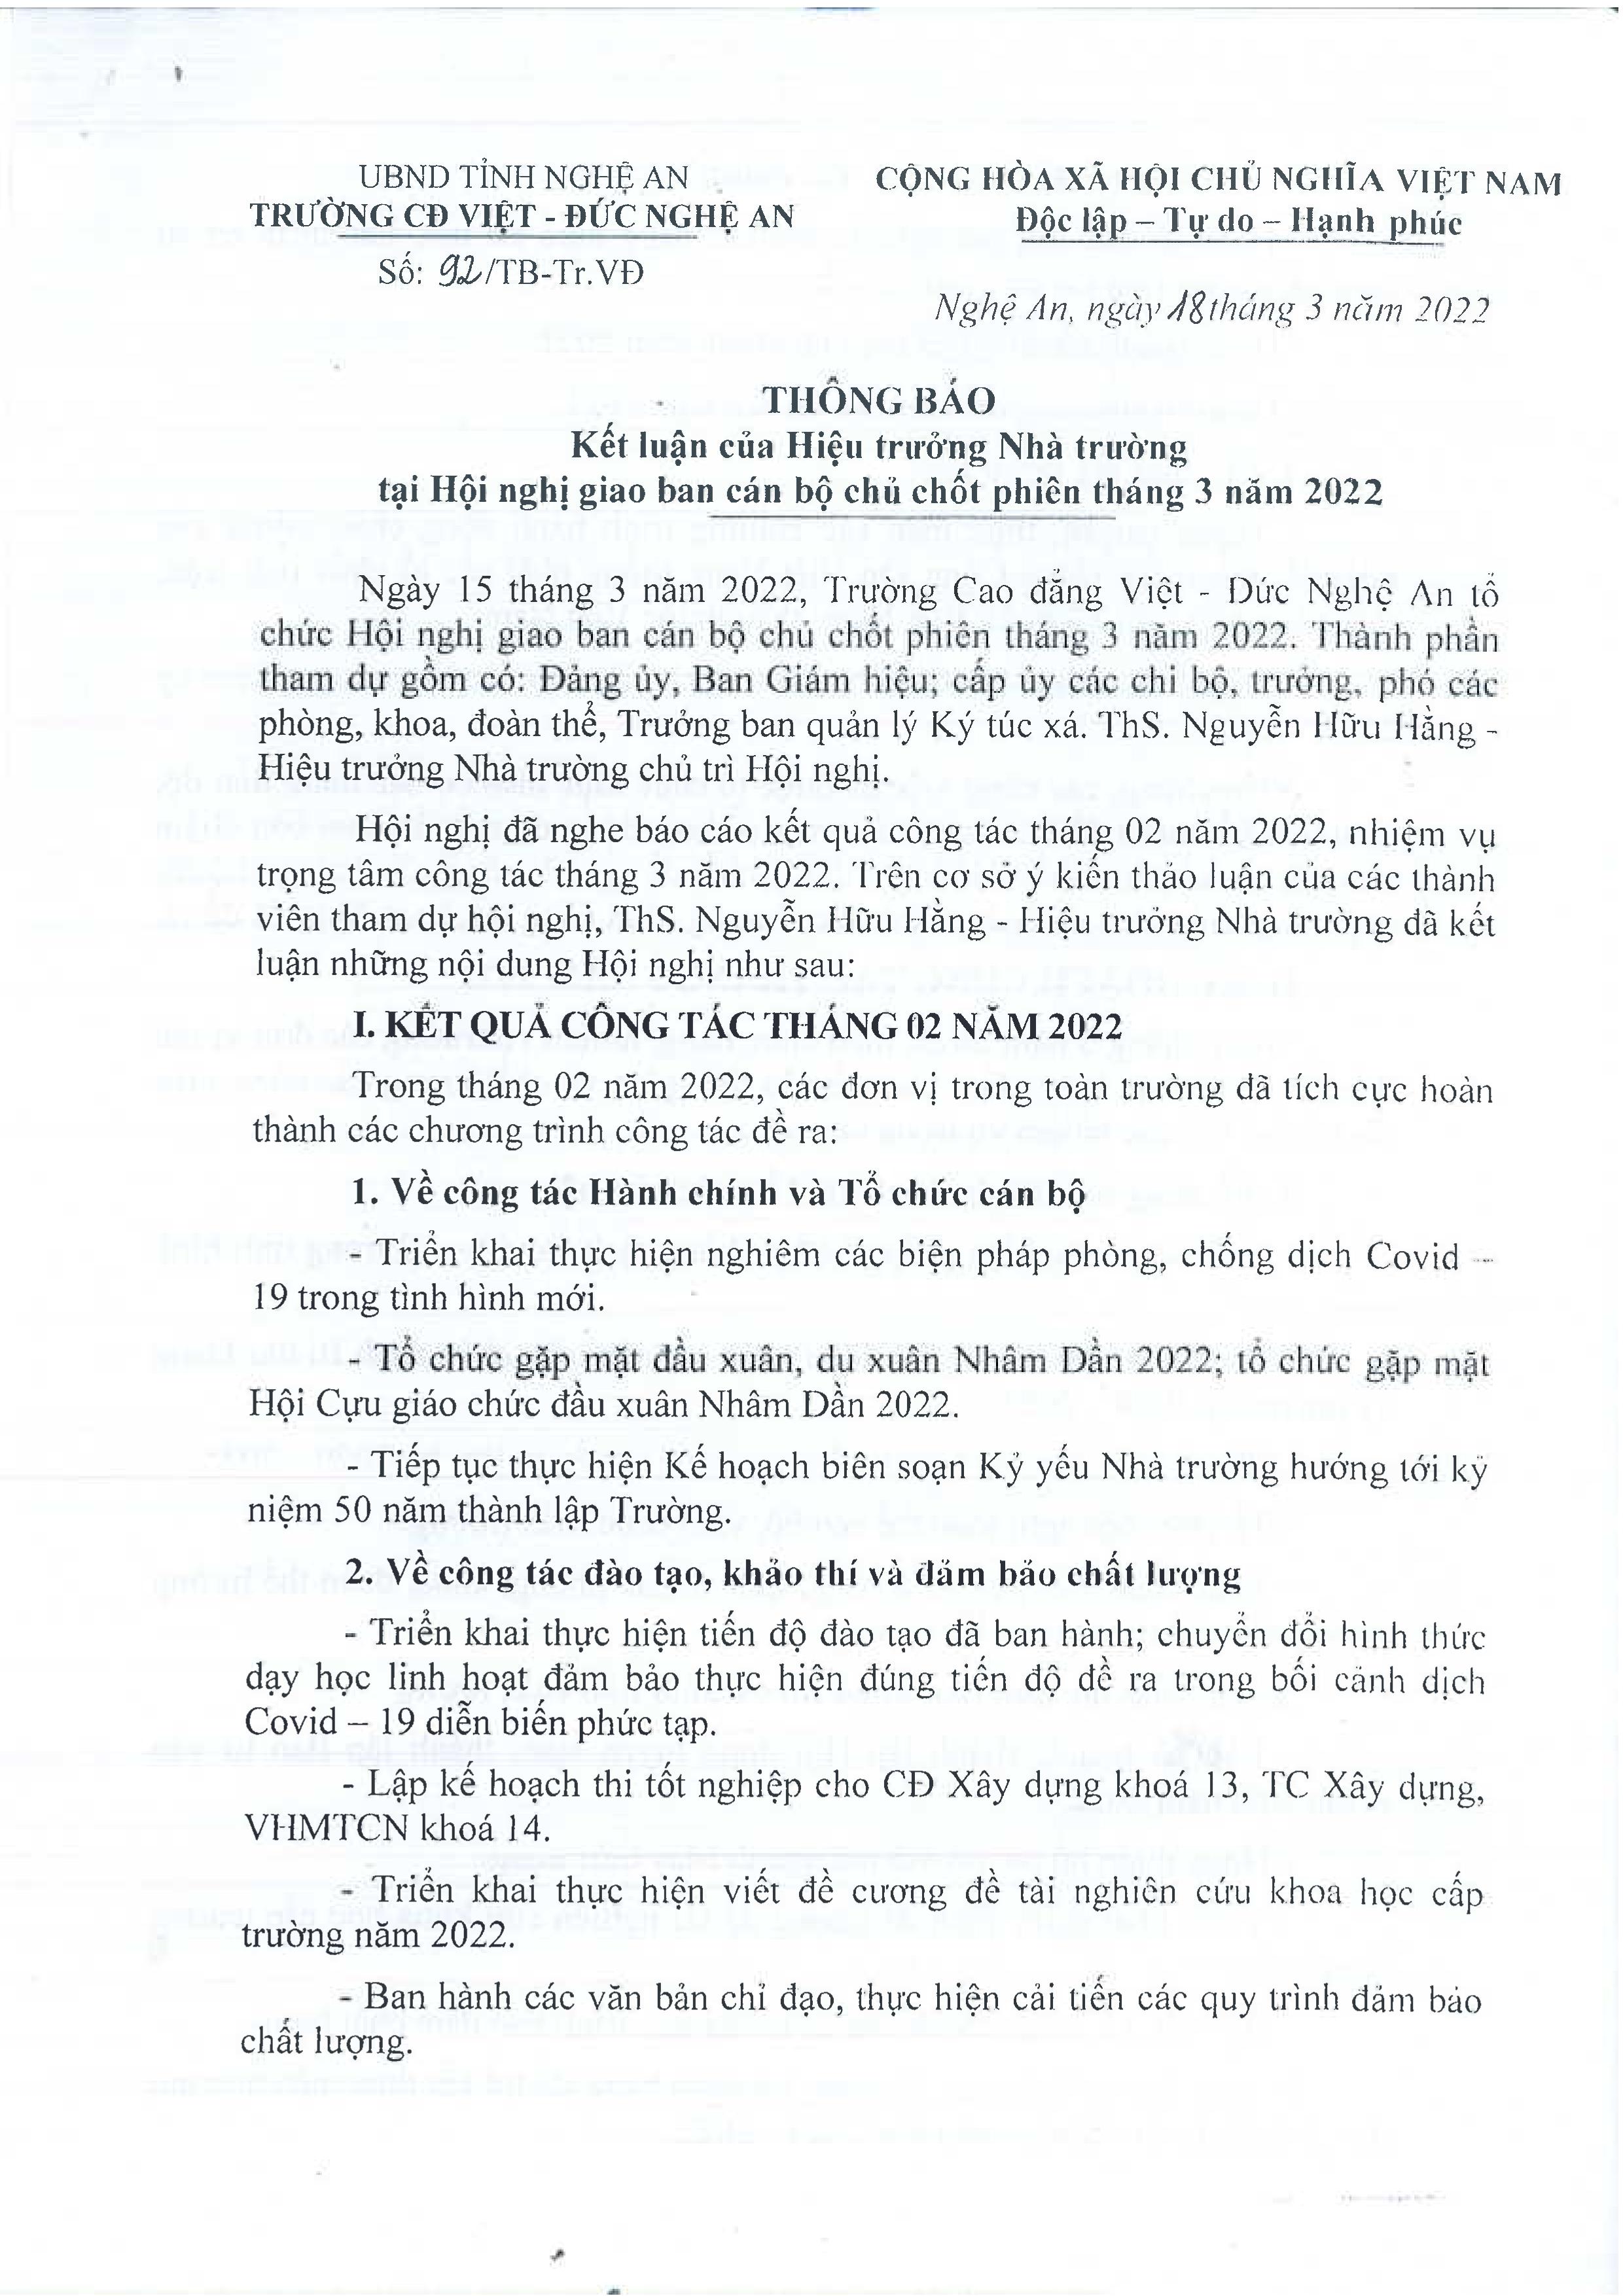 Thông báo số 92/TB-Tr.VĐ ngày 18/3/2022 của Trường Cao đẳng Việt - Đức Nghệ An về Kết luận của Hiệu trưởng Nhà trường tại Hội nghị Giao ban cán bộ chủ chốt phiên tháng 3 năm 2022